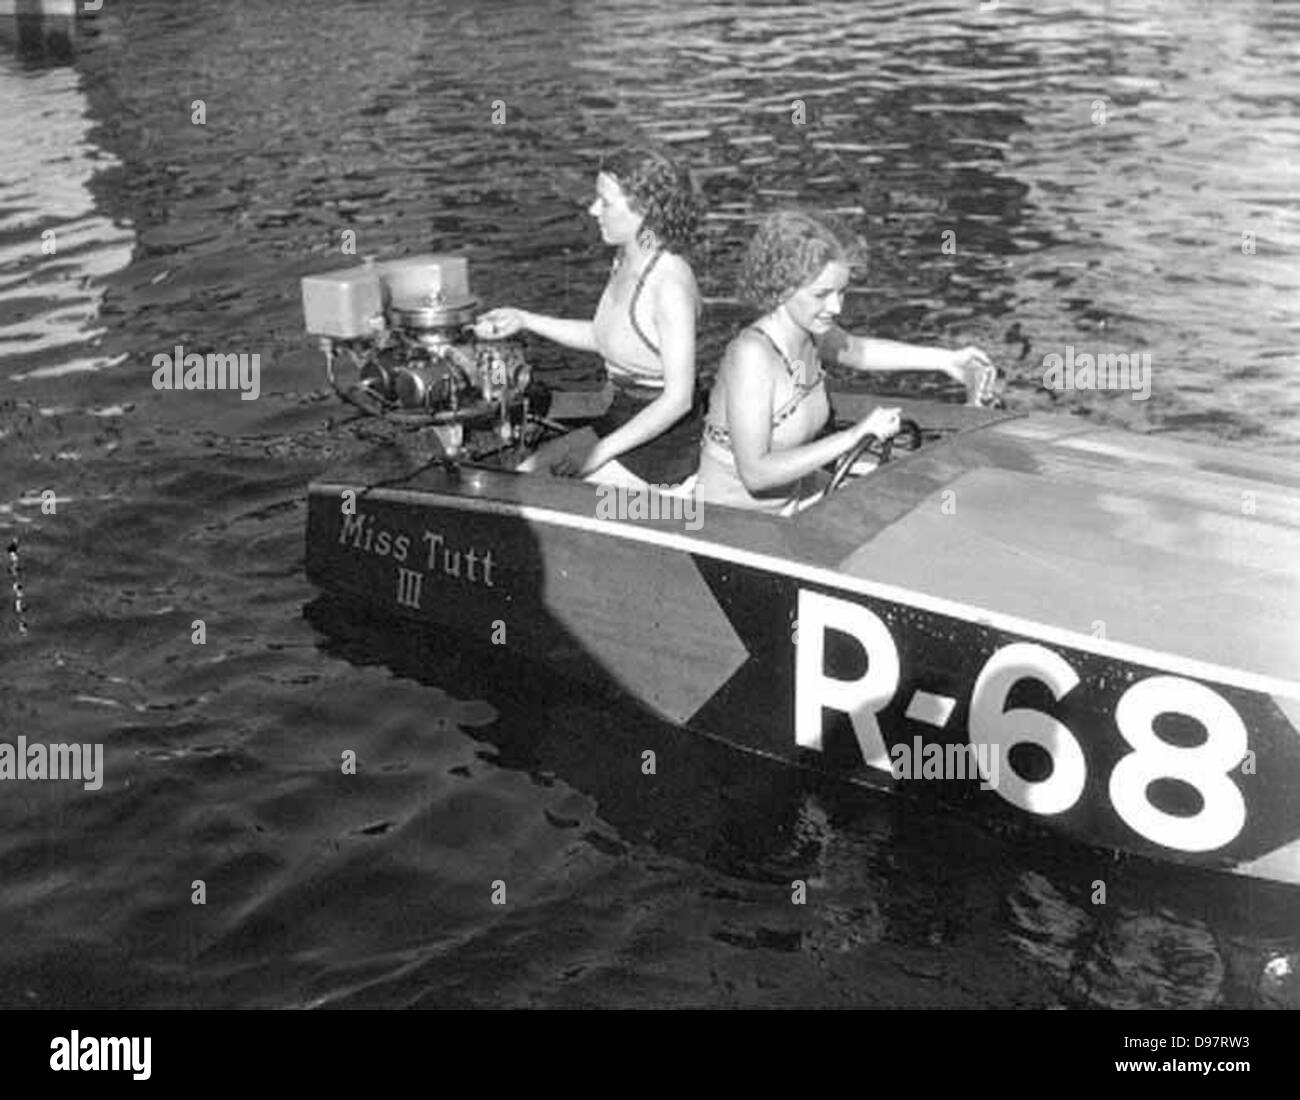 Zwei Frauen in ein kleines Schnellboot auf einem See, starten des Motors, wahrscheinlich US-Bundesstaat Washington Stockfoto